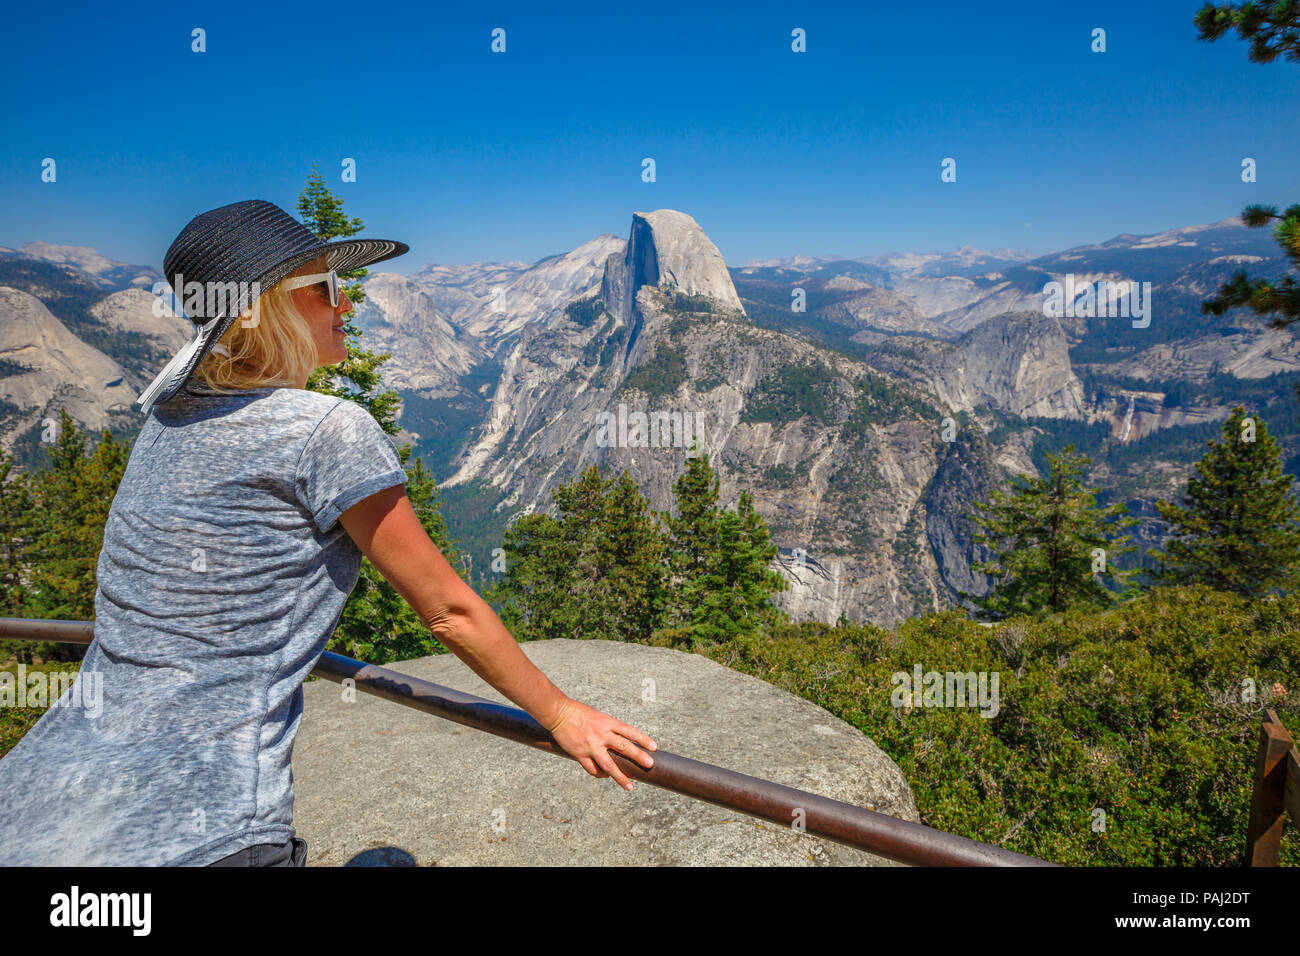 Le meilleur style de femme avec chapeau contemplant Glacier Point in Yosemite National Park. Détente à demi dôme populaires de Glacier Point négliger. American travel holidays concept. Californie, USA. Banque D'Images